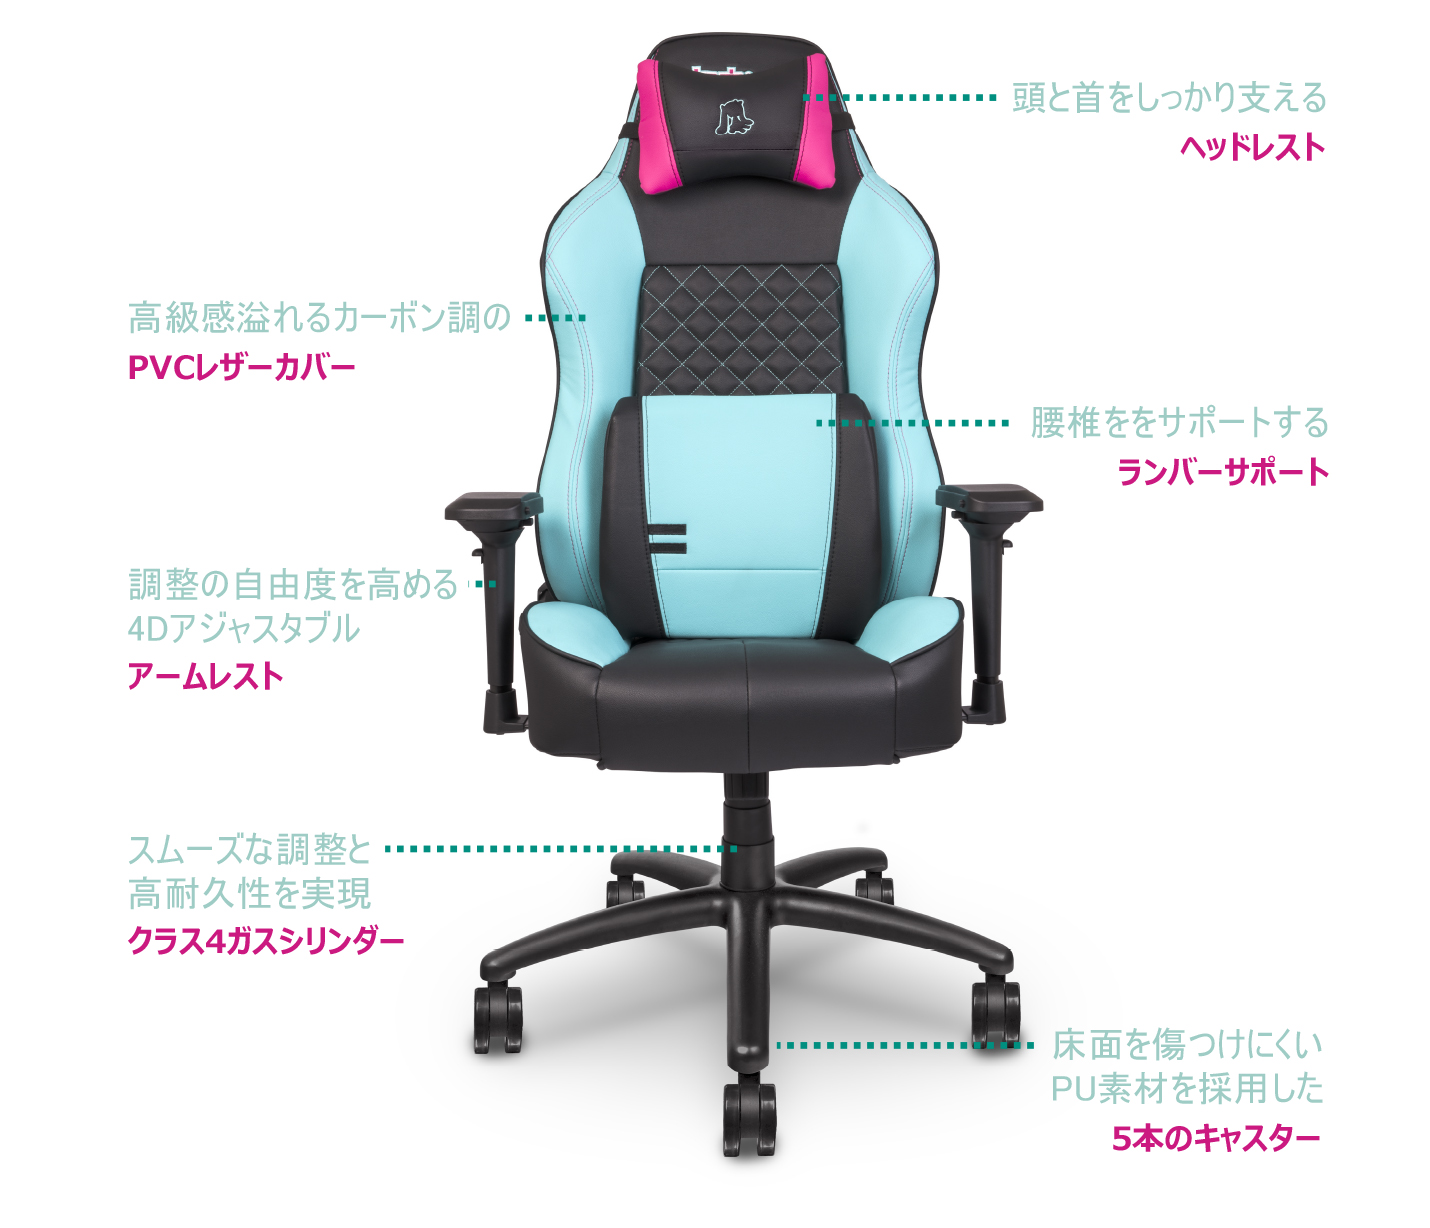 Hatsune Miku Gaming Chair